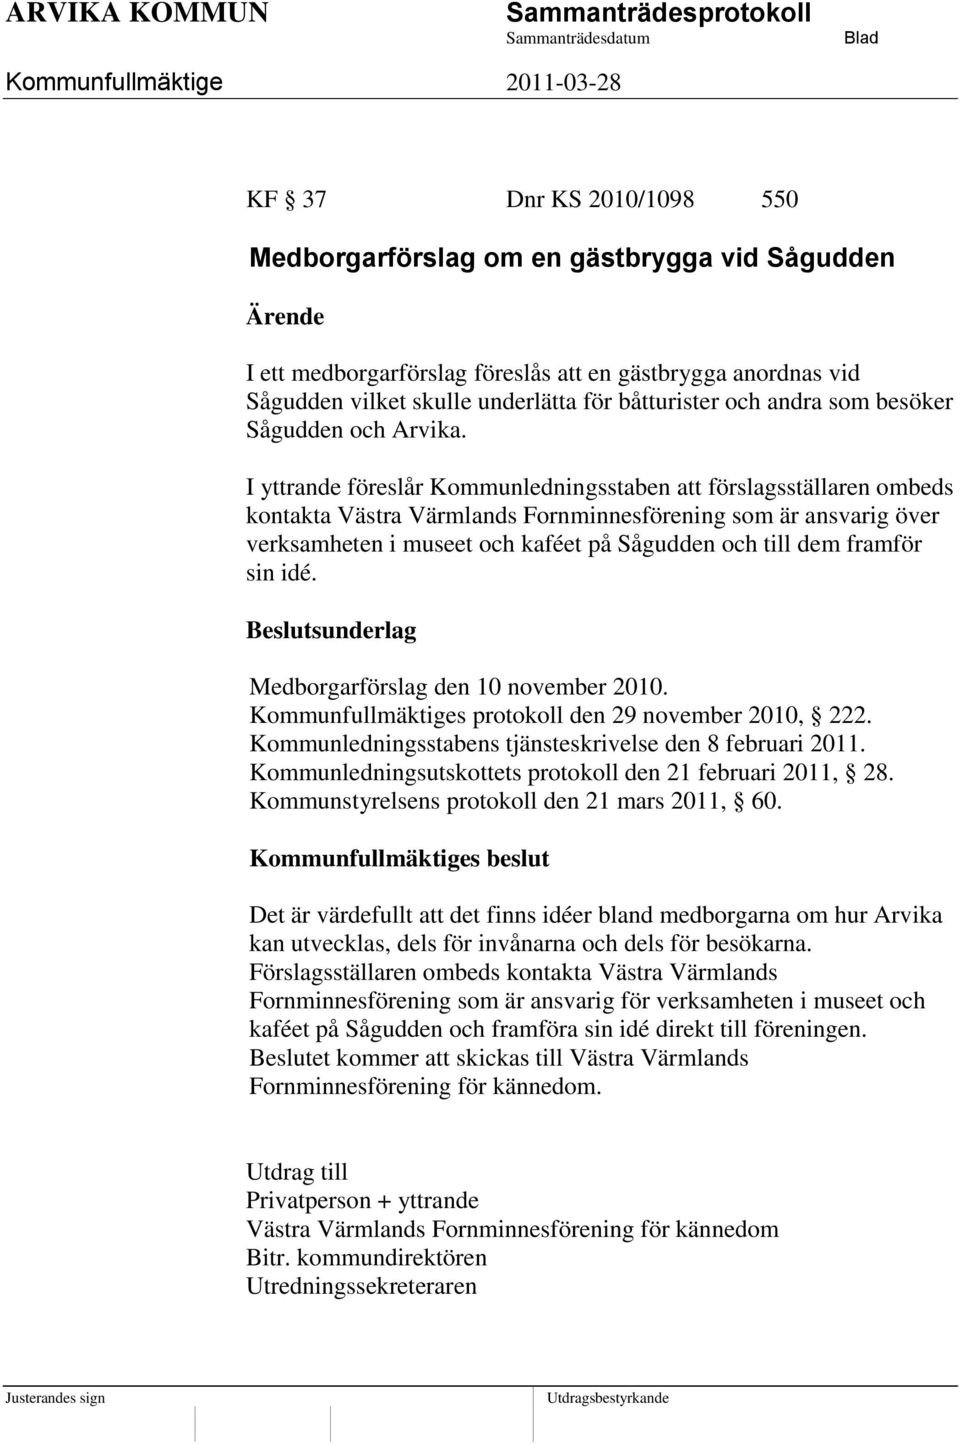 I yttrande föreslår Kommunledningsstaben att förslagsställaren ombeds kontakta Västra Värmlands Fornminnesförening som är ansvarig över verksamheten i museet och kaféet på Sågudden och till dem